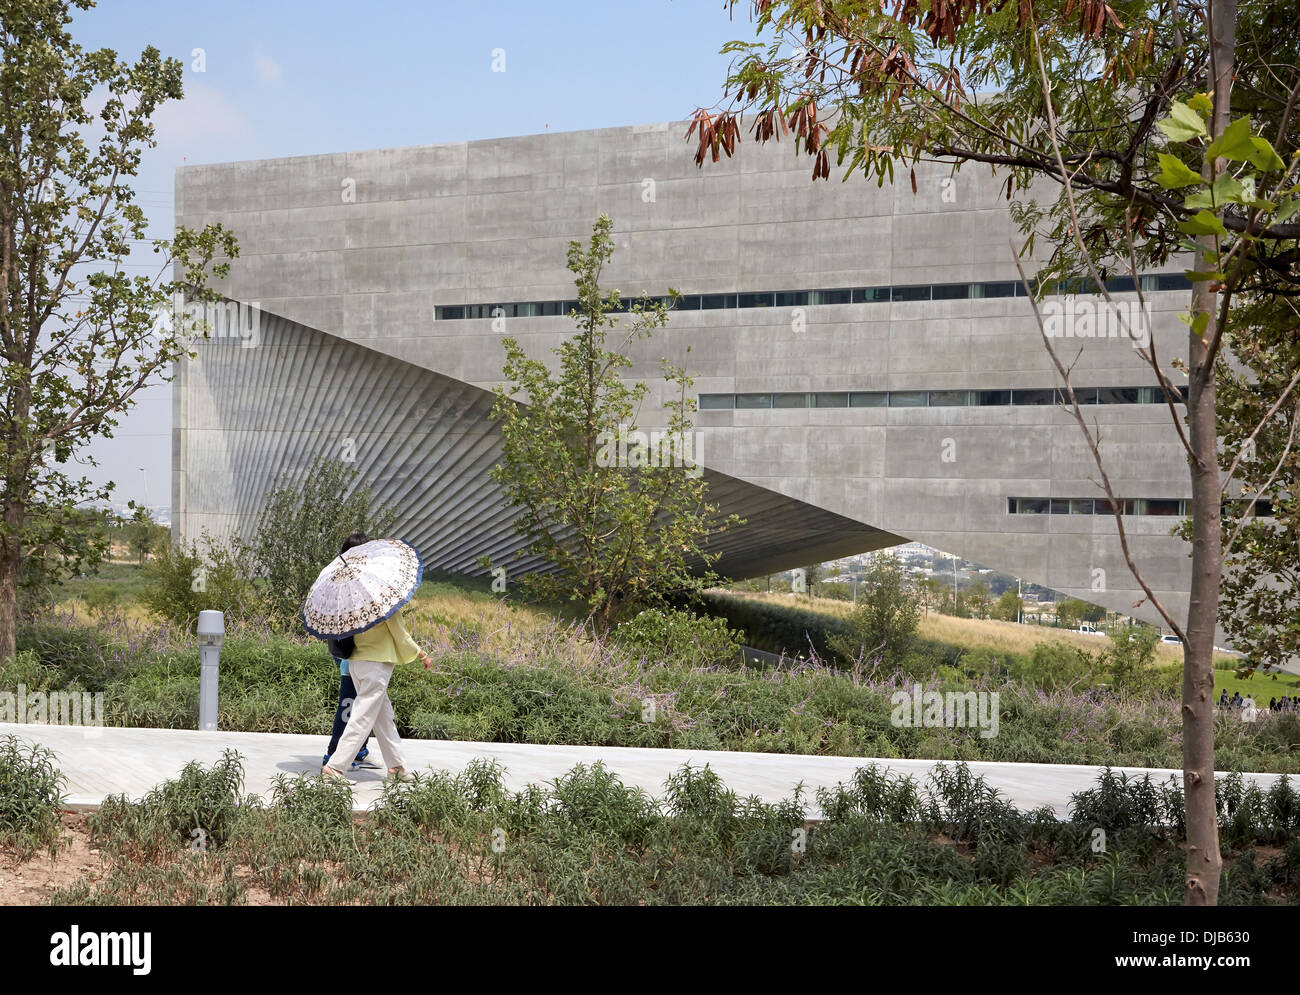 La Universidad de Monterrey (UDEM) Roberto Garza Sada-Centro de Arte Arquitectura y Diseno, Monterrey, Mexique. Architecte : Tadao Banque D'Images